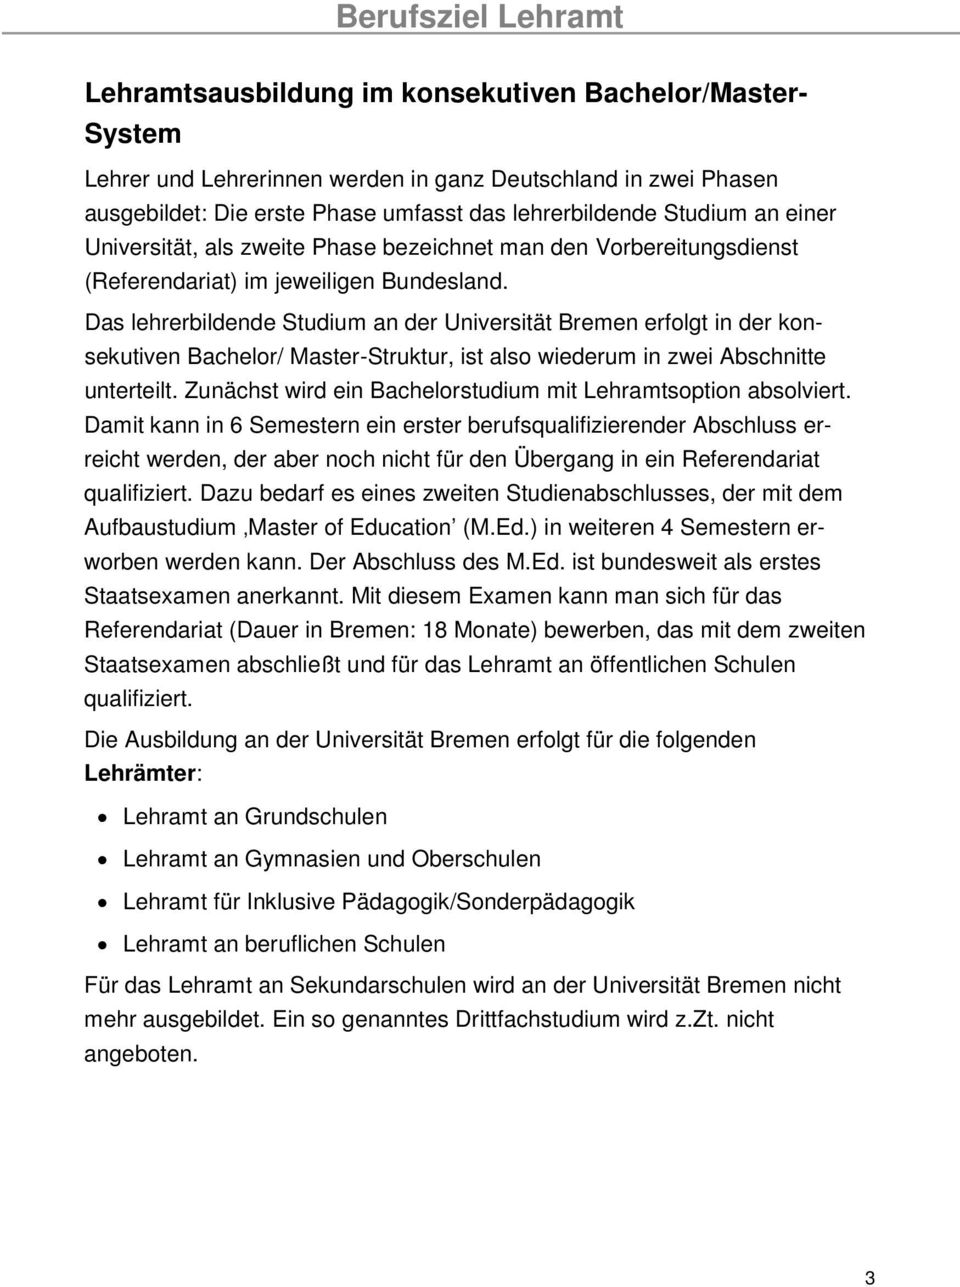 Das lehrerbildende Studium an der Universität Bremen erfolgt in der konsekutiven Bachelor/ Master-Struktur, ist also wiederum in zwei Abschnitte unterteilt.